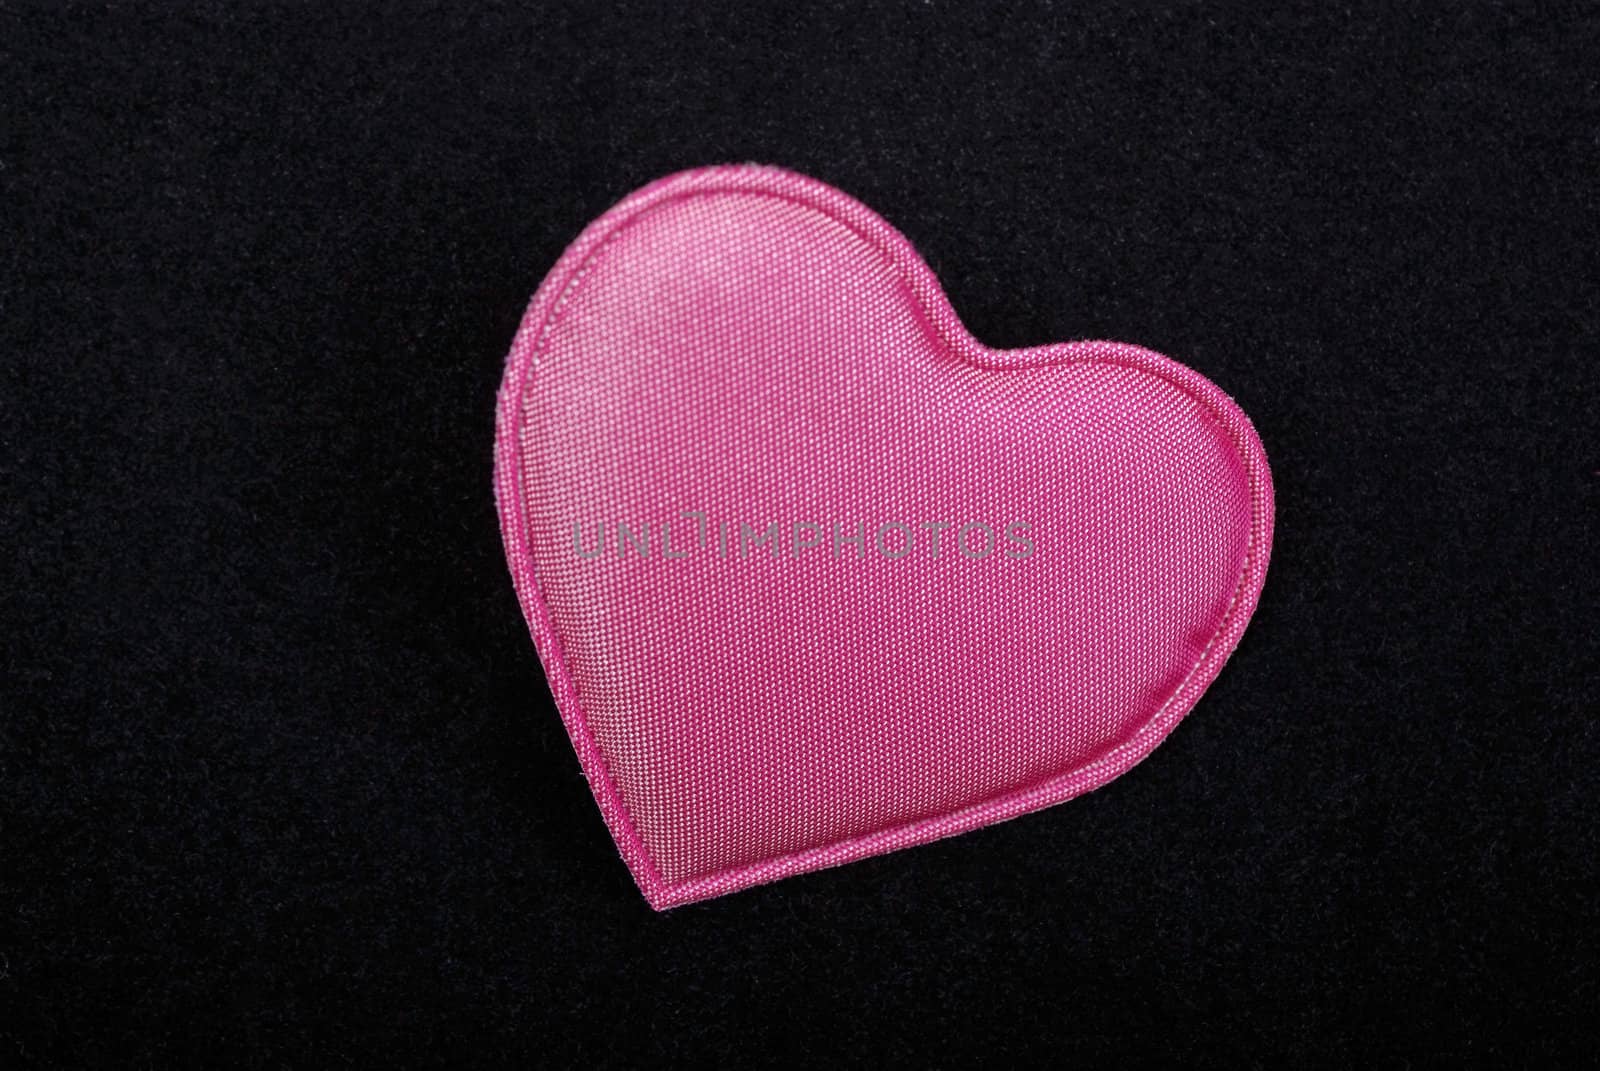 Pink heart macro isolated on black velvet background.